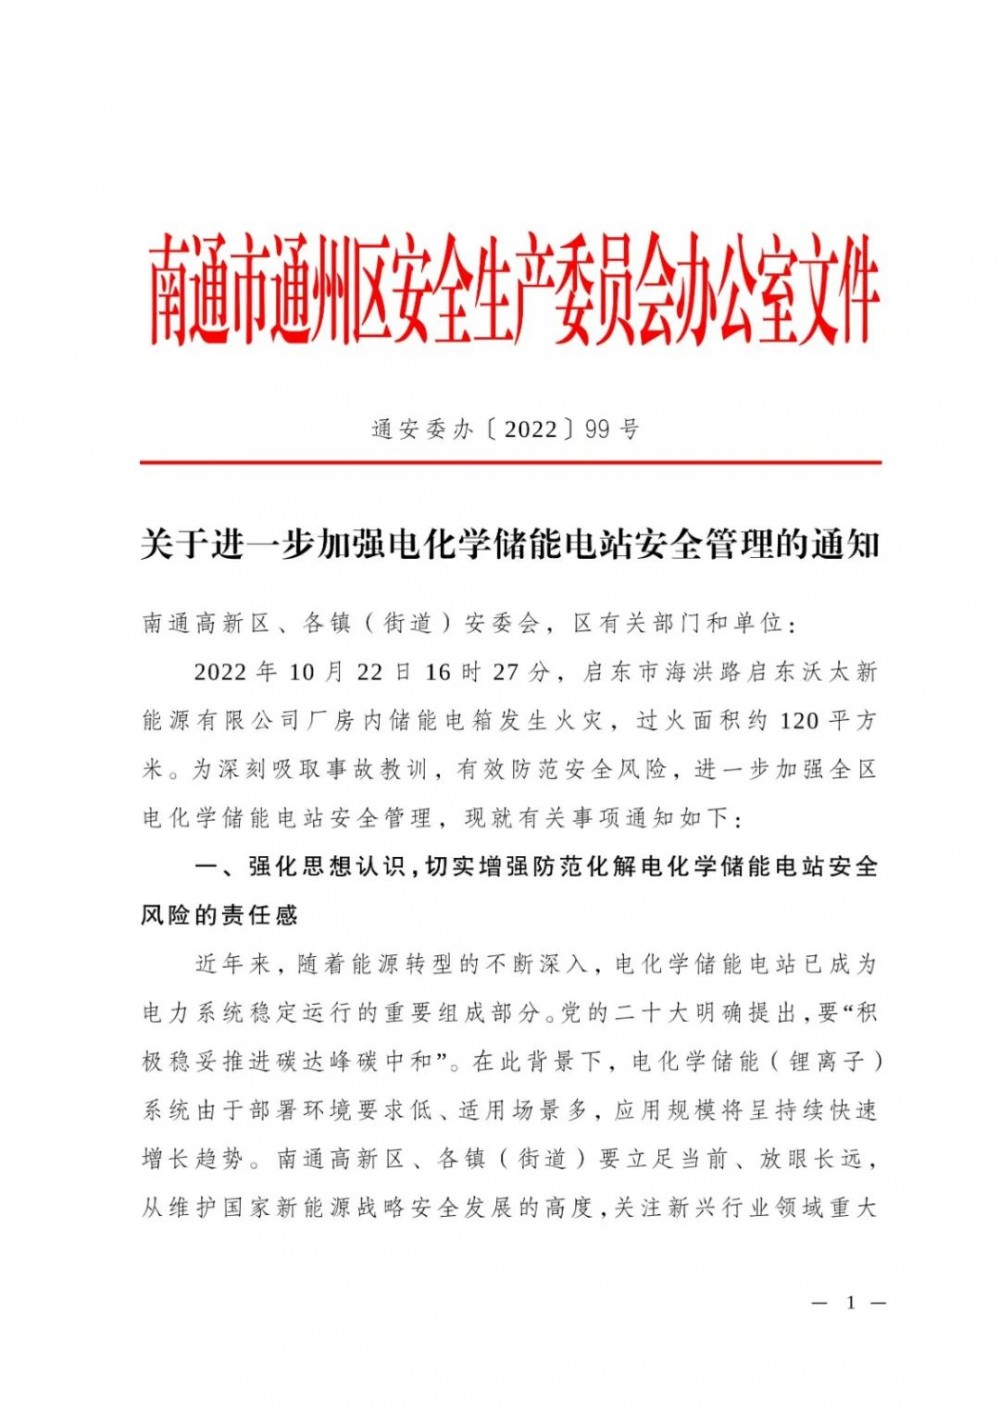 江苏省南通市通州区发布《关于进一步加强电化学储能电站安全管理的通知》